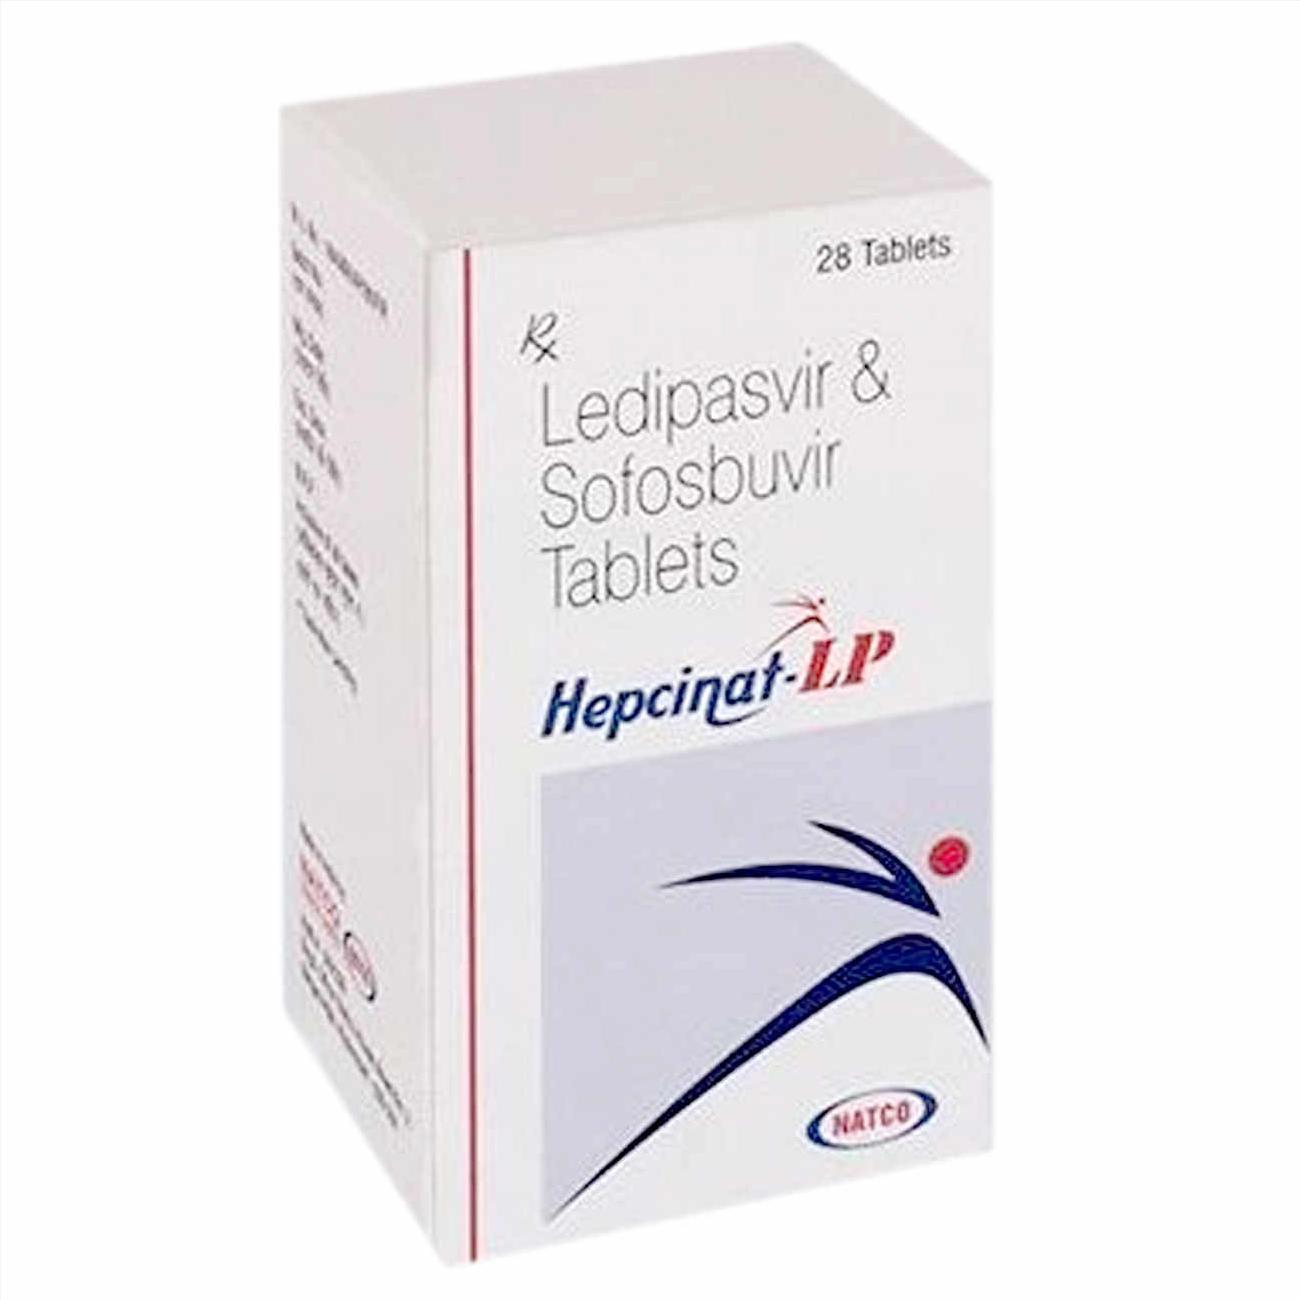 Thuốc Hepcinat LP điều trị viêm gan c mua ở đâu, thuốc Hepcinat LP giá bao nhiêu?